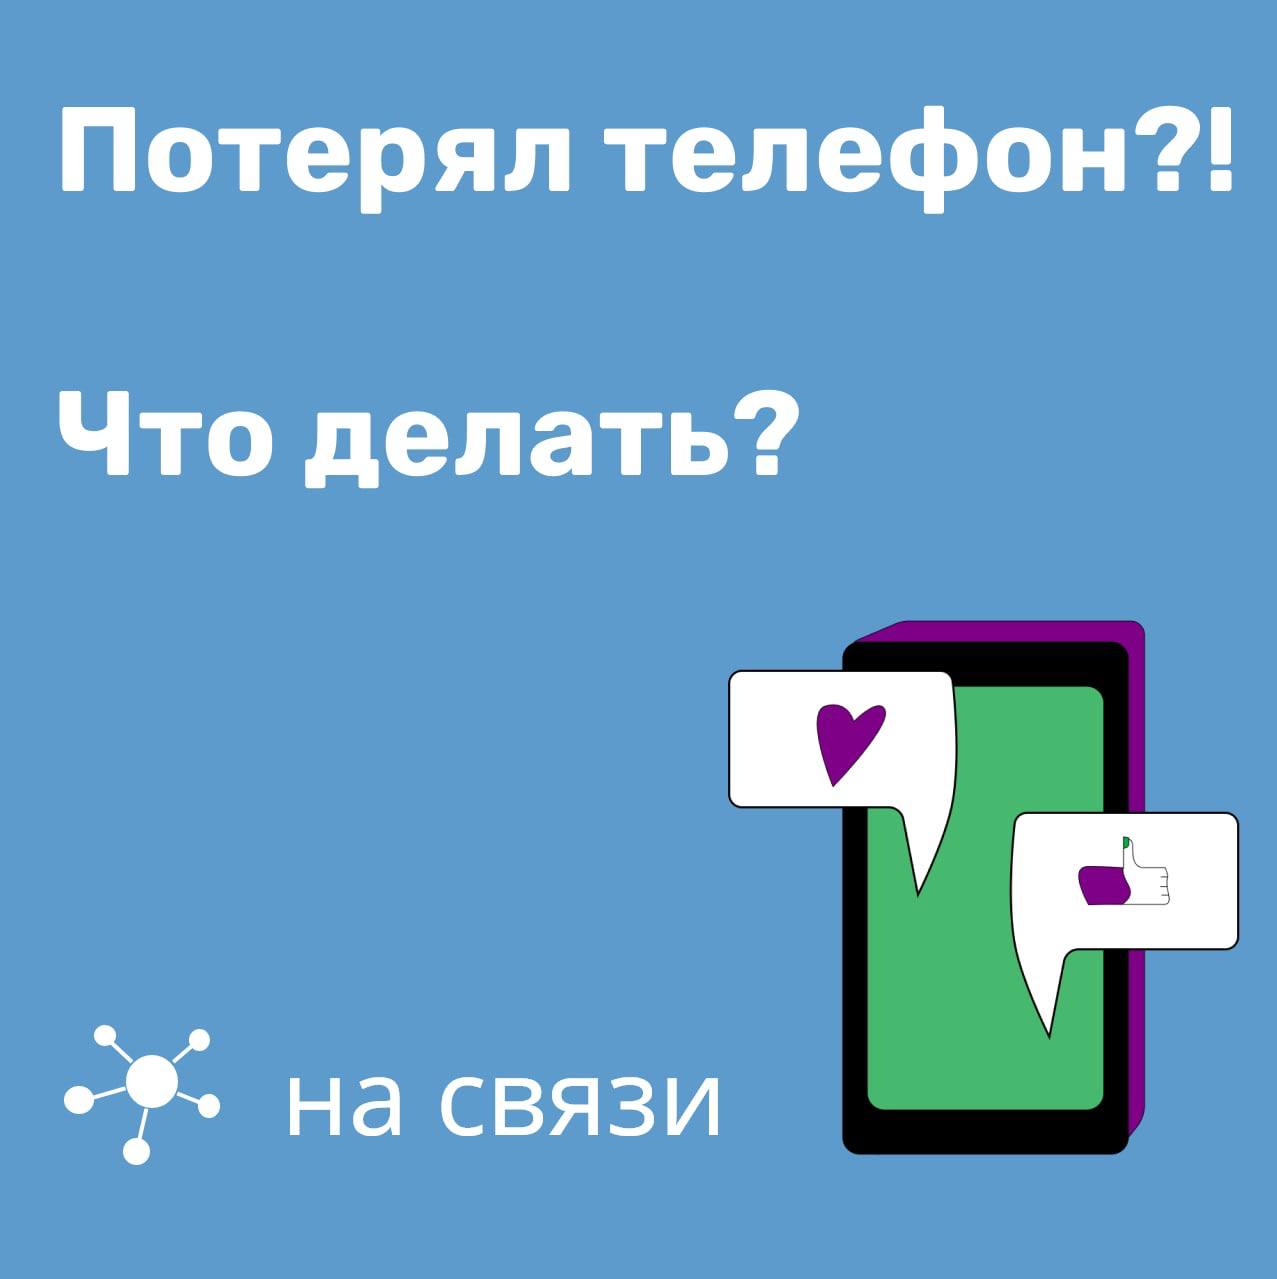 Телефон службы поддержки телеграмм в россии бесплатный фото 21